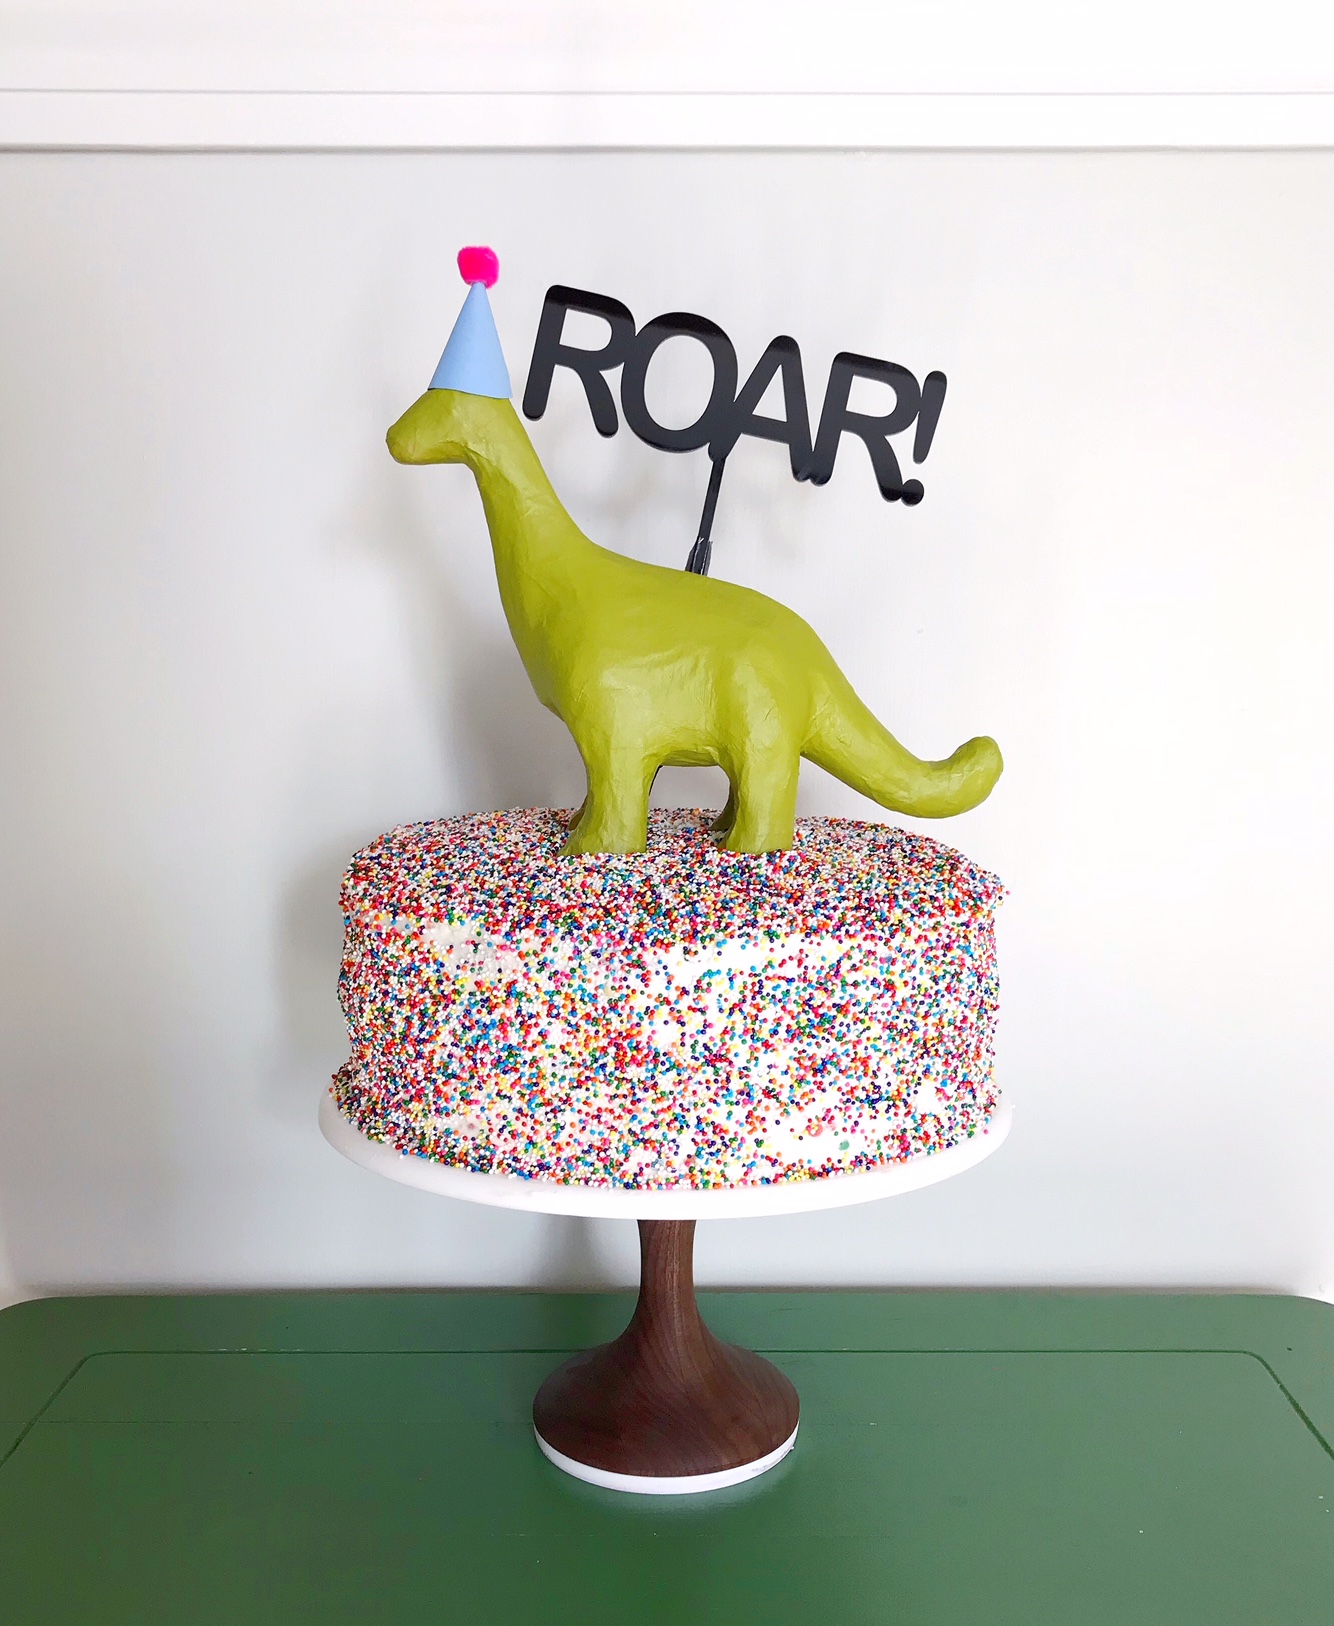 Dinosaur Party Ideas, Birthday Parties